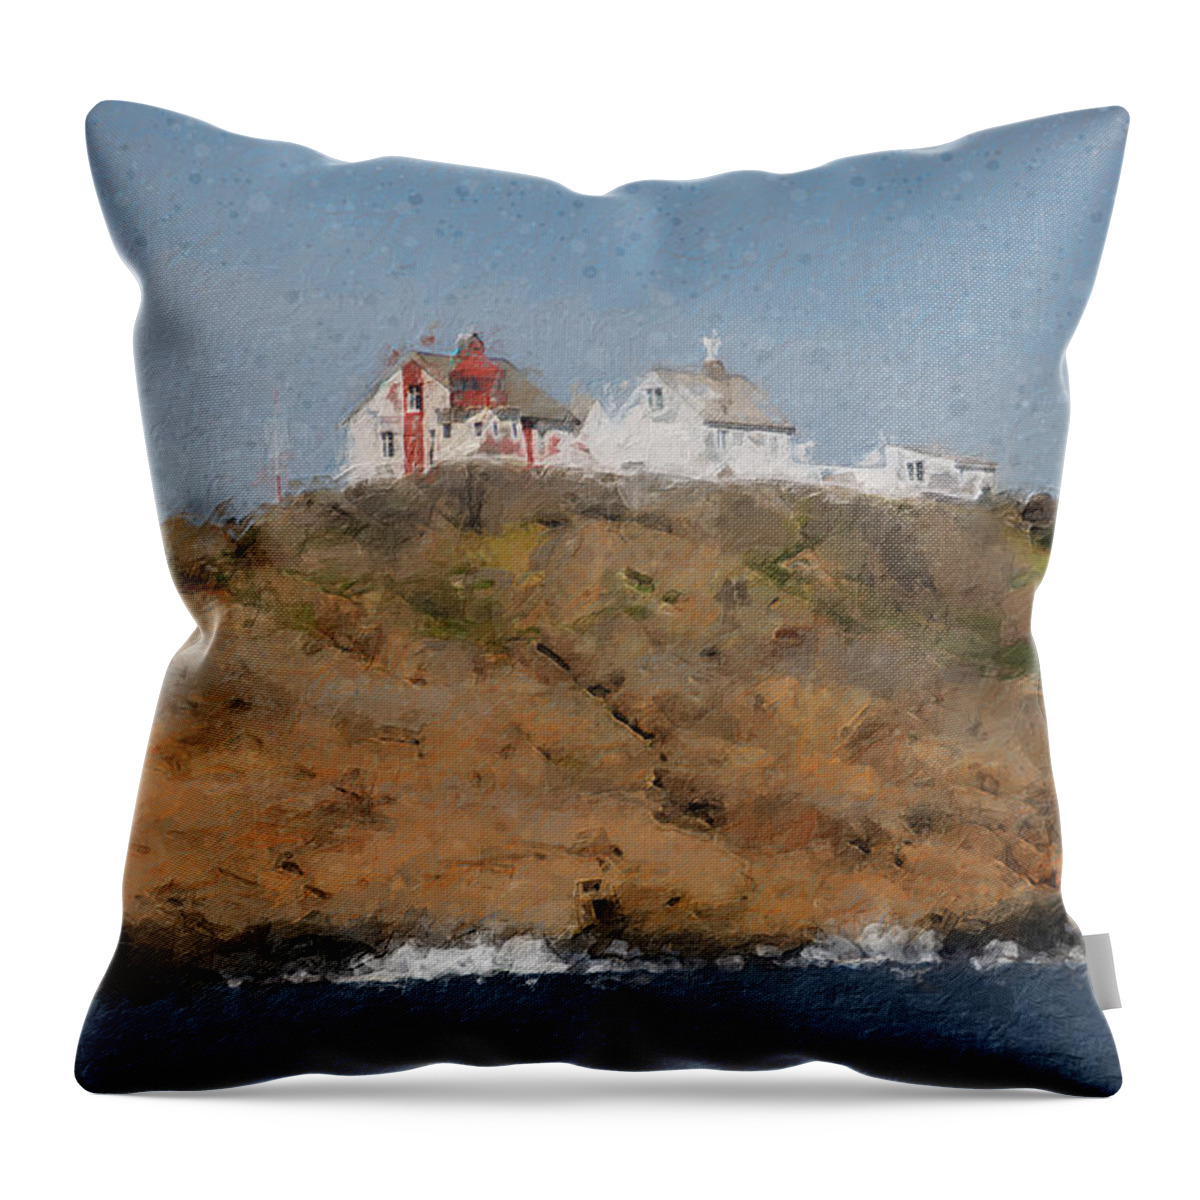 Lighthouse Throw Pillow featuring the digital art Stavernsodden lighthouse by Geir Rosset